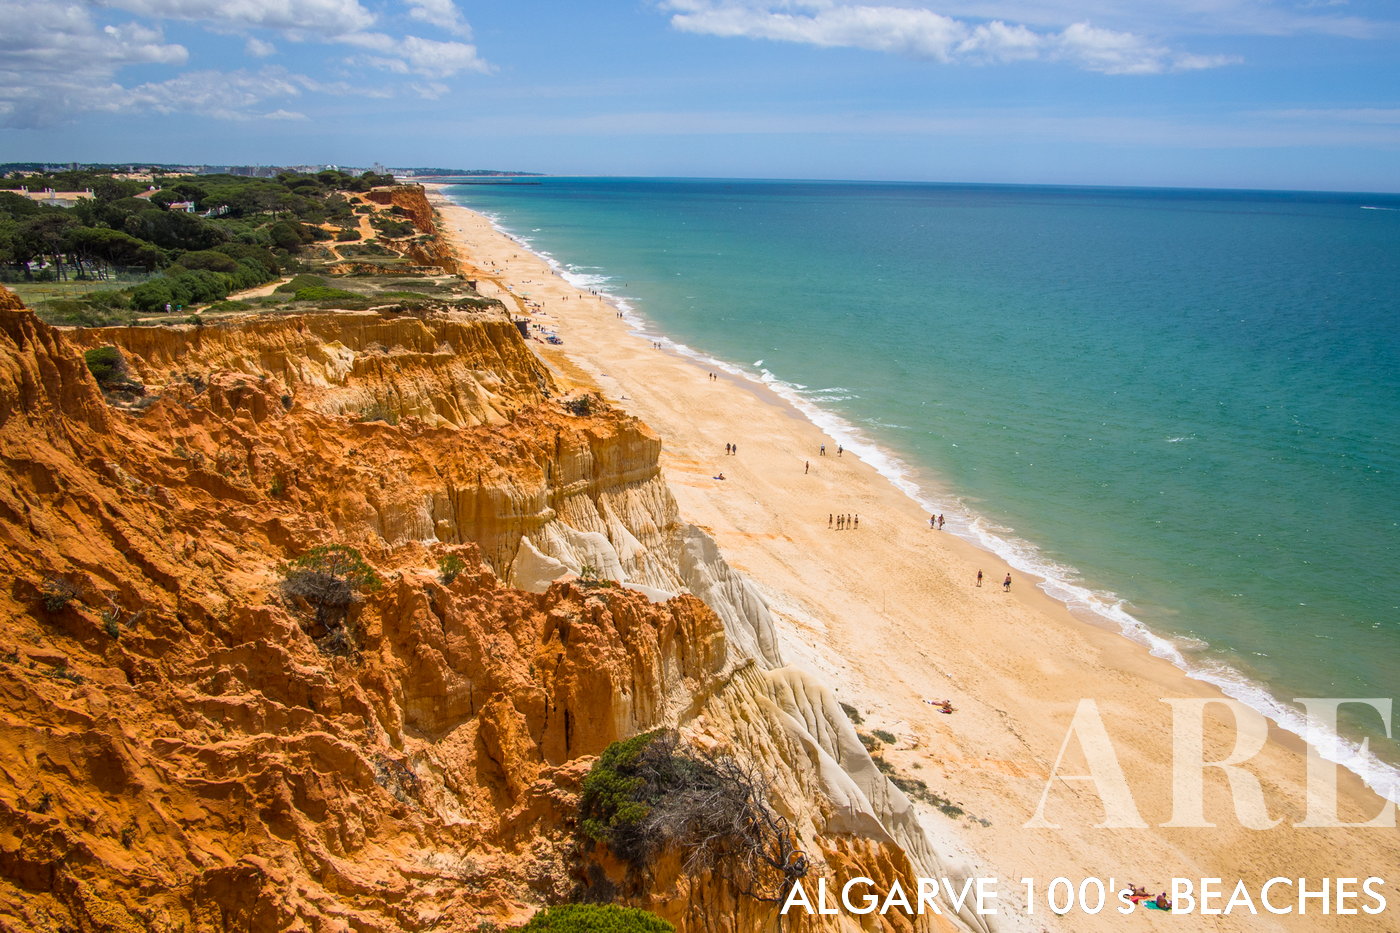 Estendendo-se aproximadamente 5 quilómetros desde Vilamoura até à Praia do Barranco perto de Olhos de Água em Albufeira, a Praia da Falésia oferece uma das experiências de praia de maior qualidade em Portugal.